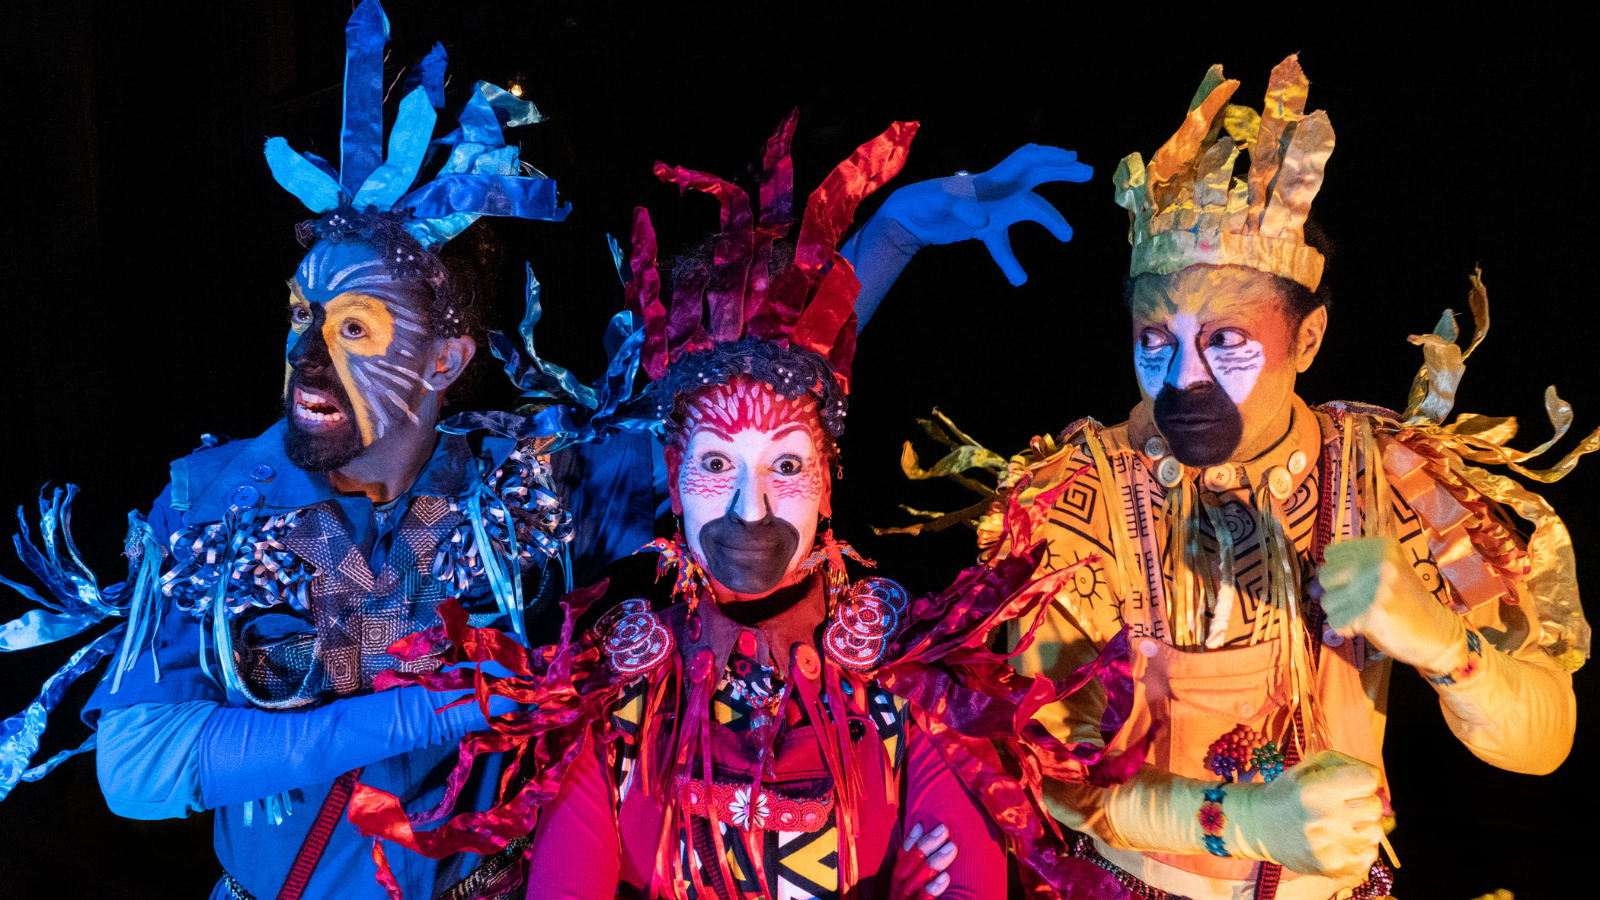 Fotografia colorida mostrando os três personagens do espetáculo "Os Coloridos" da Cia. Os Crespos